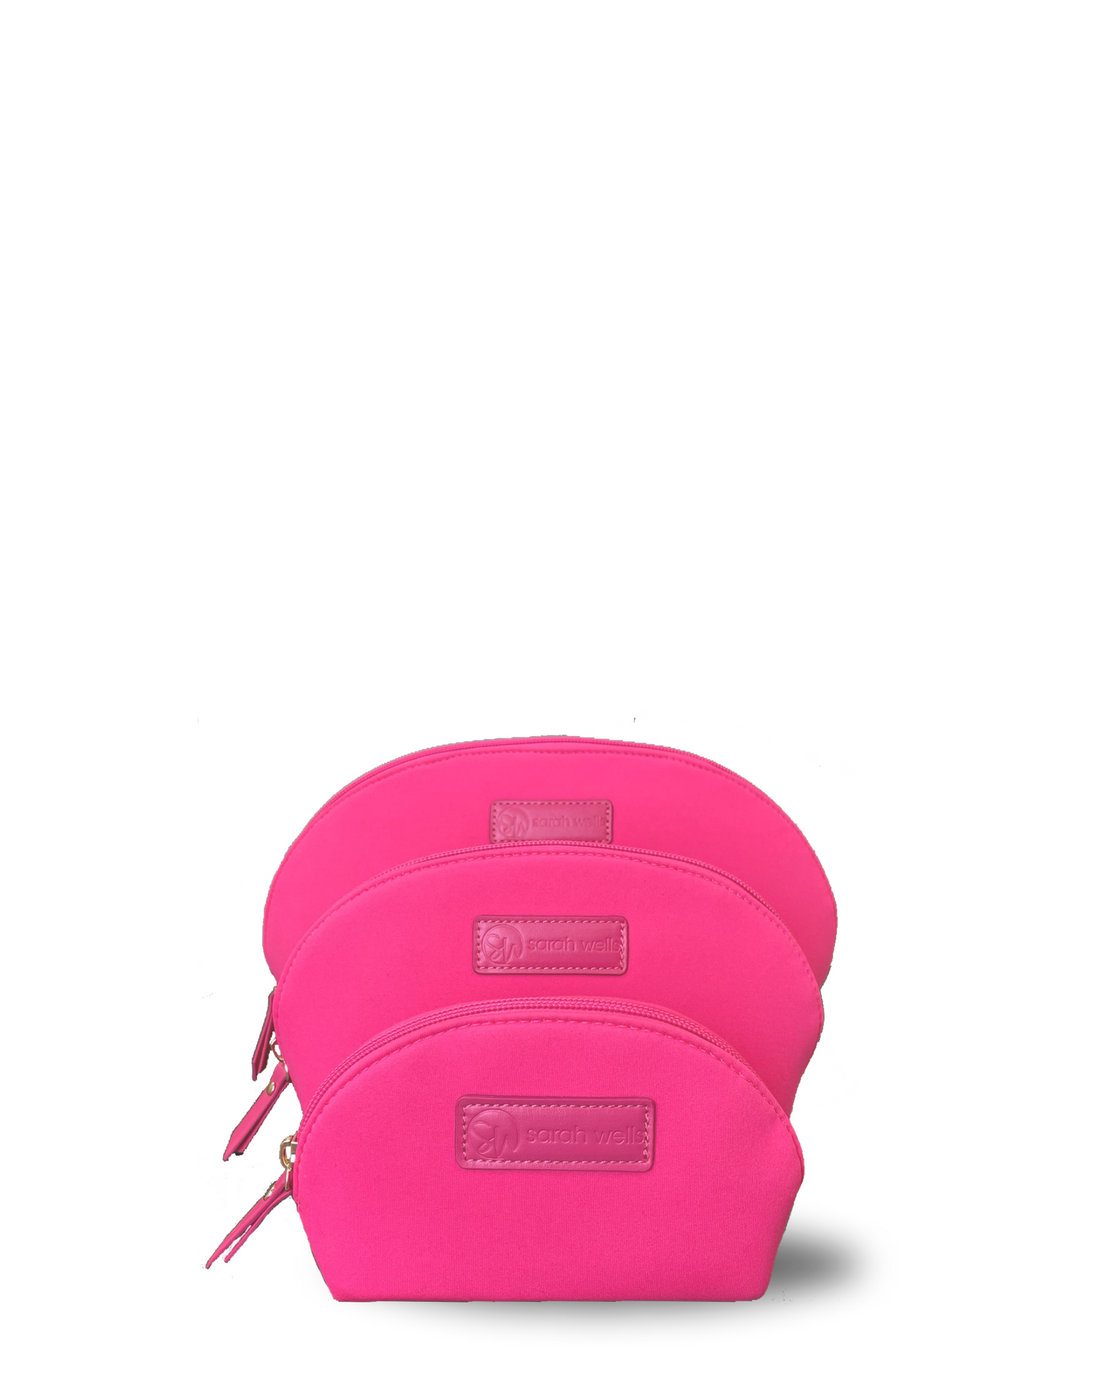 PackSWell Neoprene 3 Nesting Bags (Hot Pink)